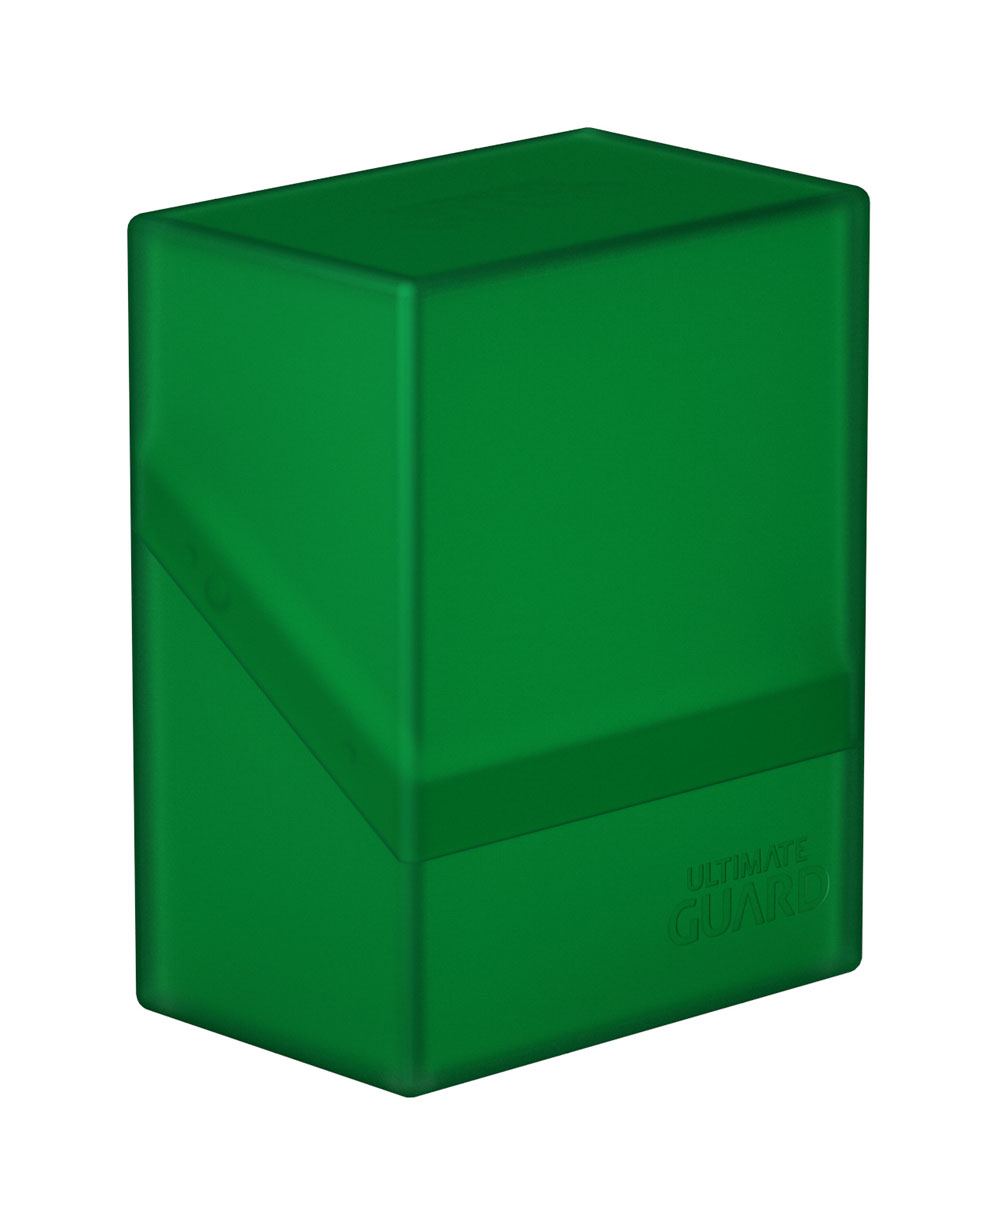 Ultimate Guard Boulder Deck Case 60+ Standard Size Emerald - Damaged packaging